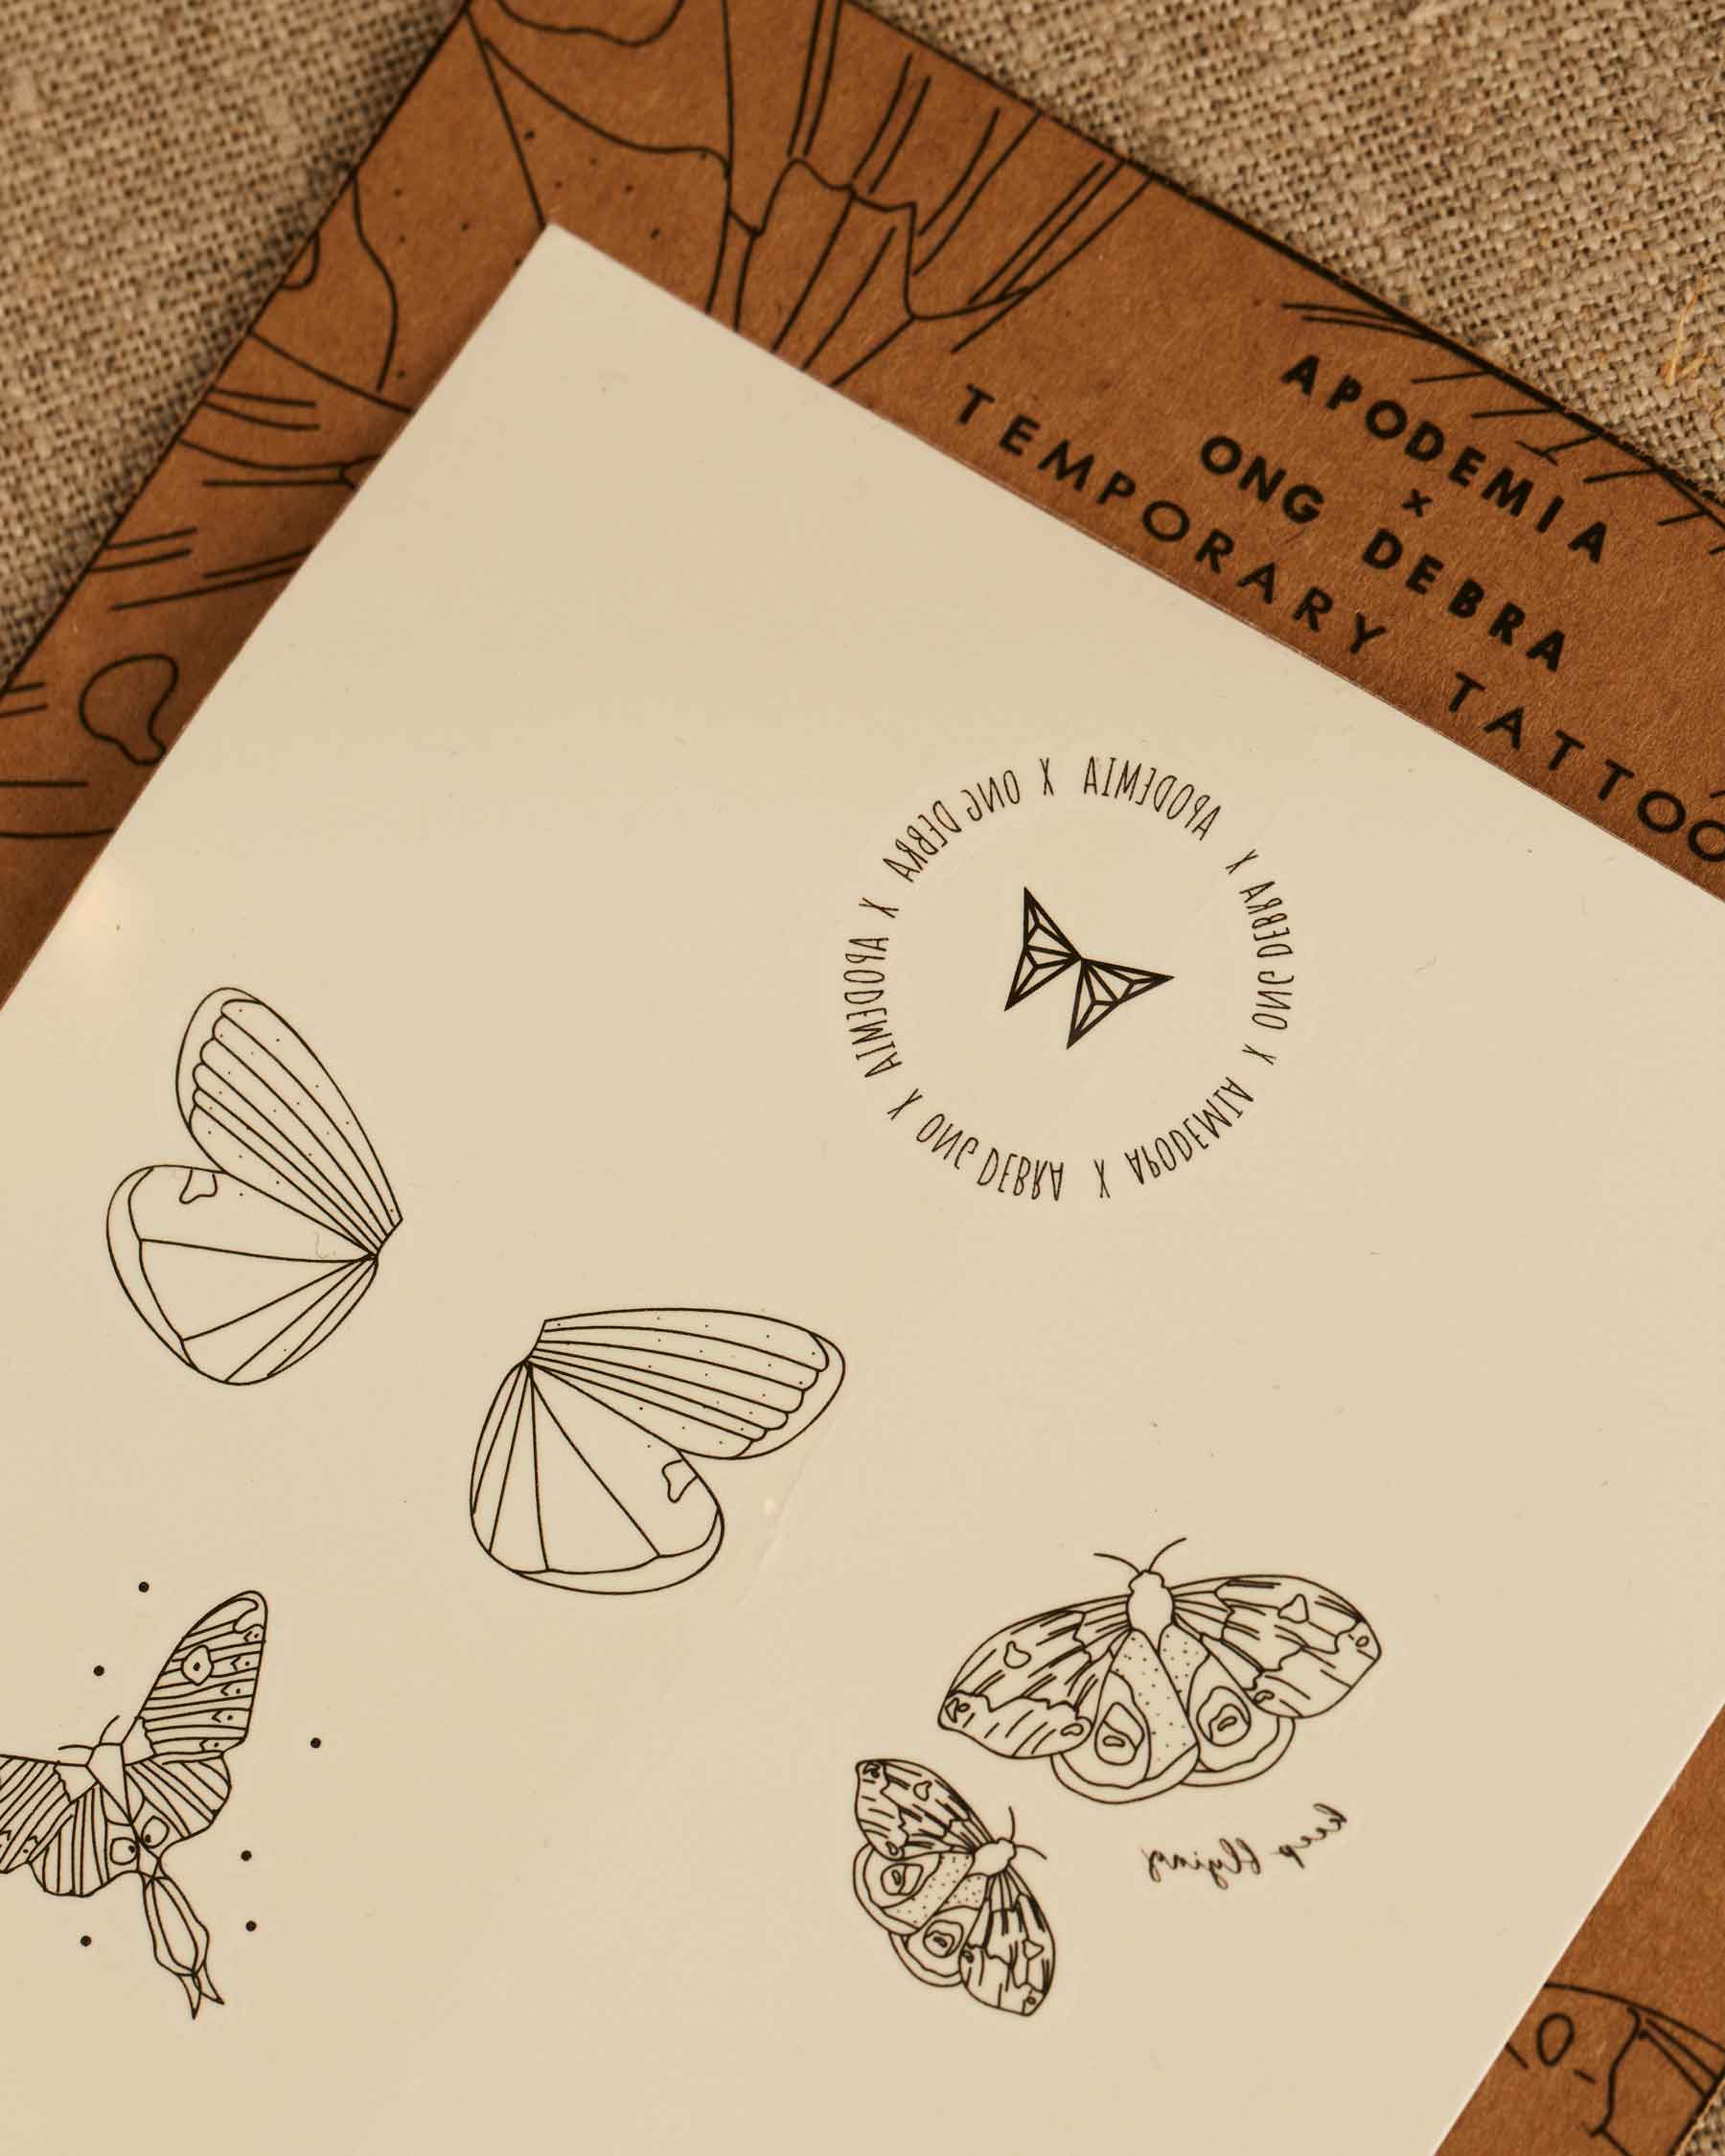 Pack Tattoos Mariposa | Colaboración Ong Debra | Edición Limitada